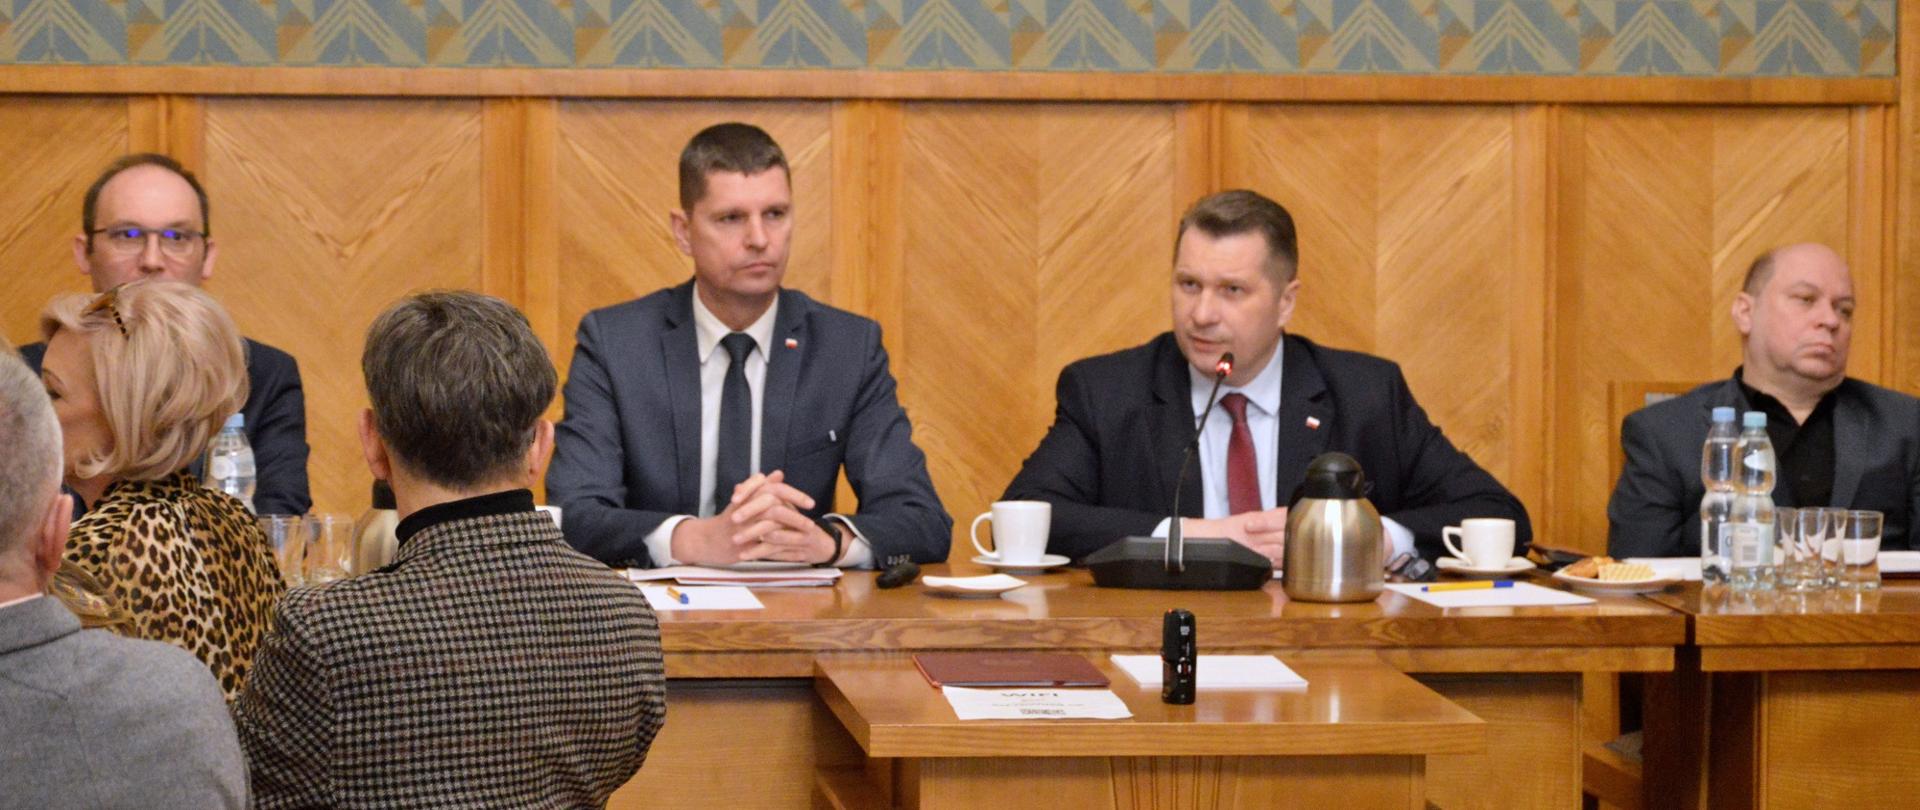 U szczytu drewnianego stołu siedzą minister Czarnek i wiceminister Piontkowski, minister mówi do małego mikrofonu, po obu stronach siedzą ludzie, za nimi zielone ściany częściowo wyłożone drewnem.